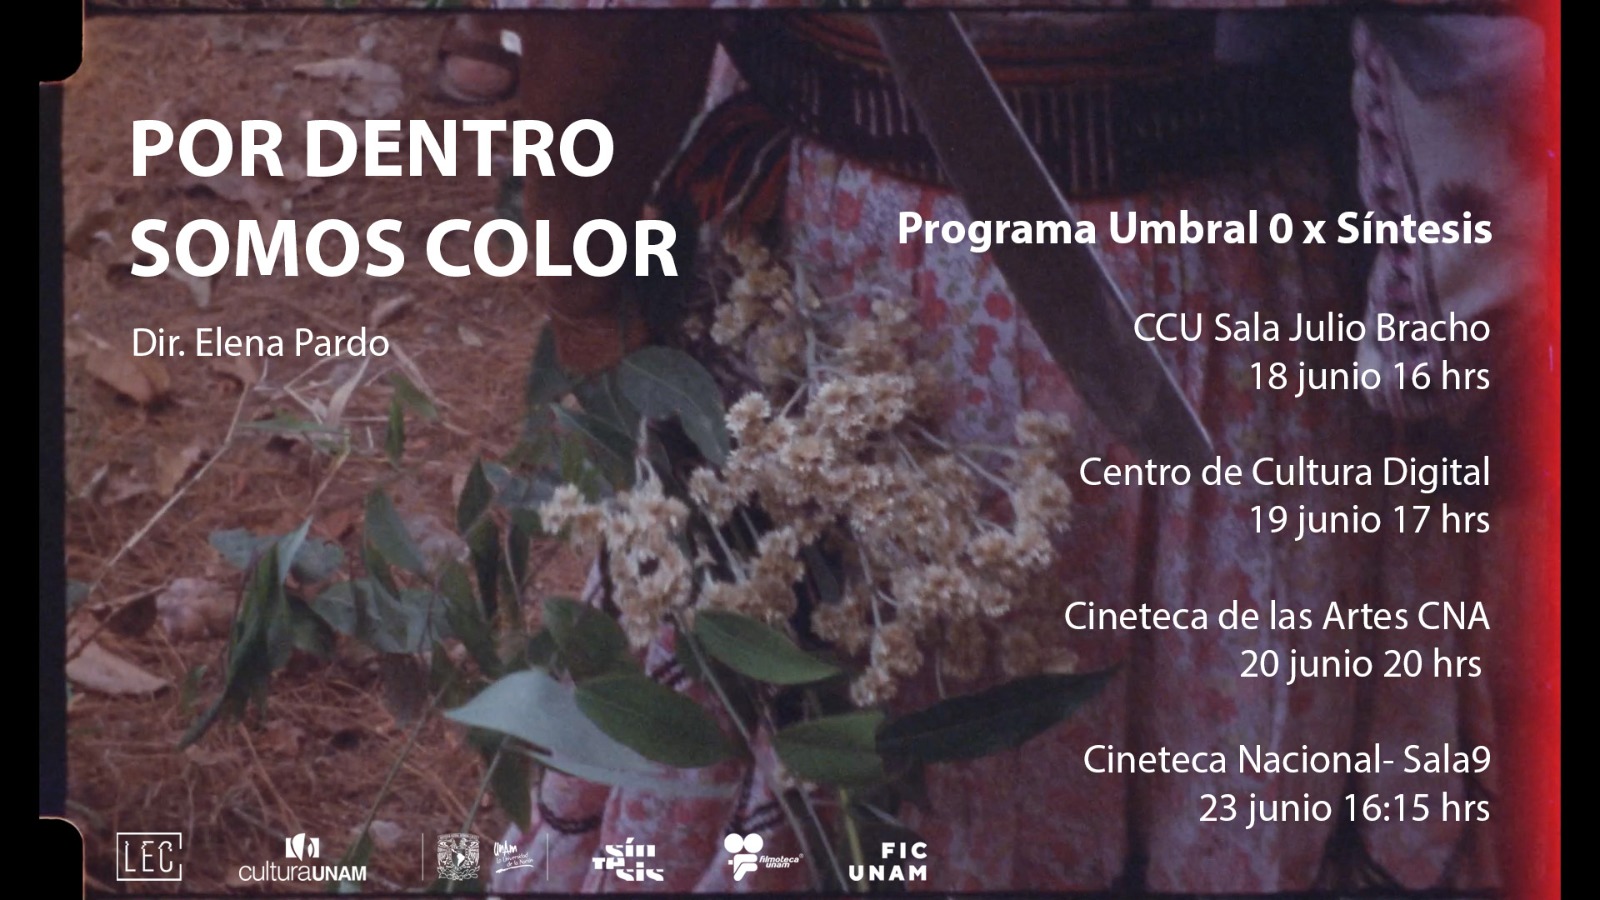 El cortometraje “Por dentro somos color” de Elena Pardo se proyectará en FICUNAM 14